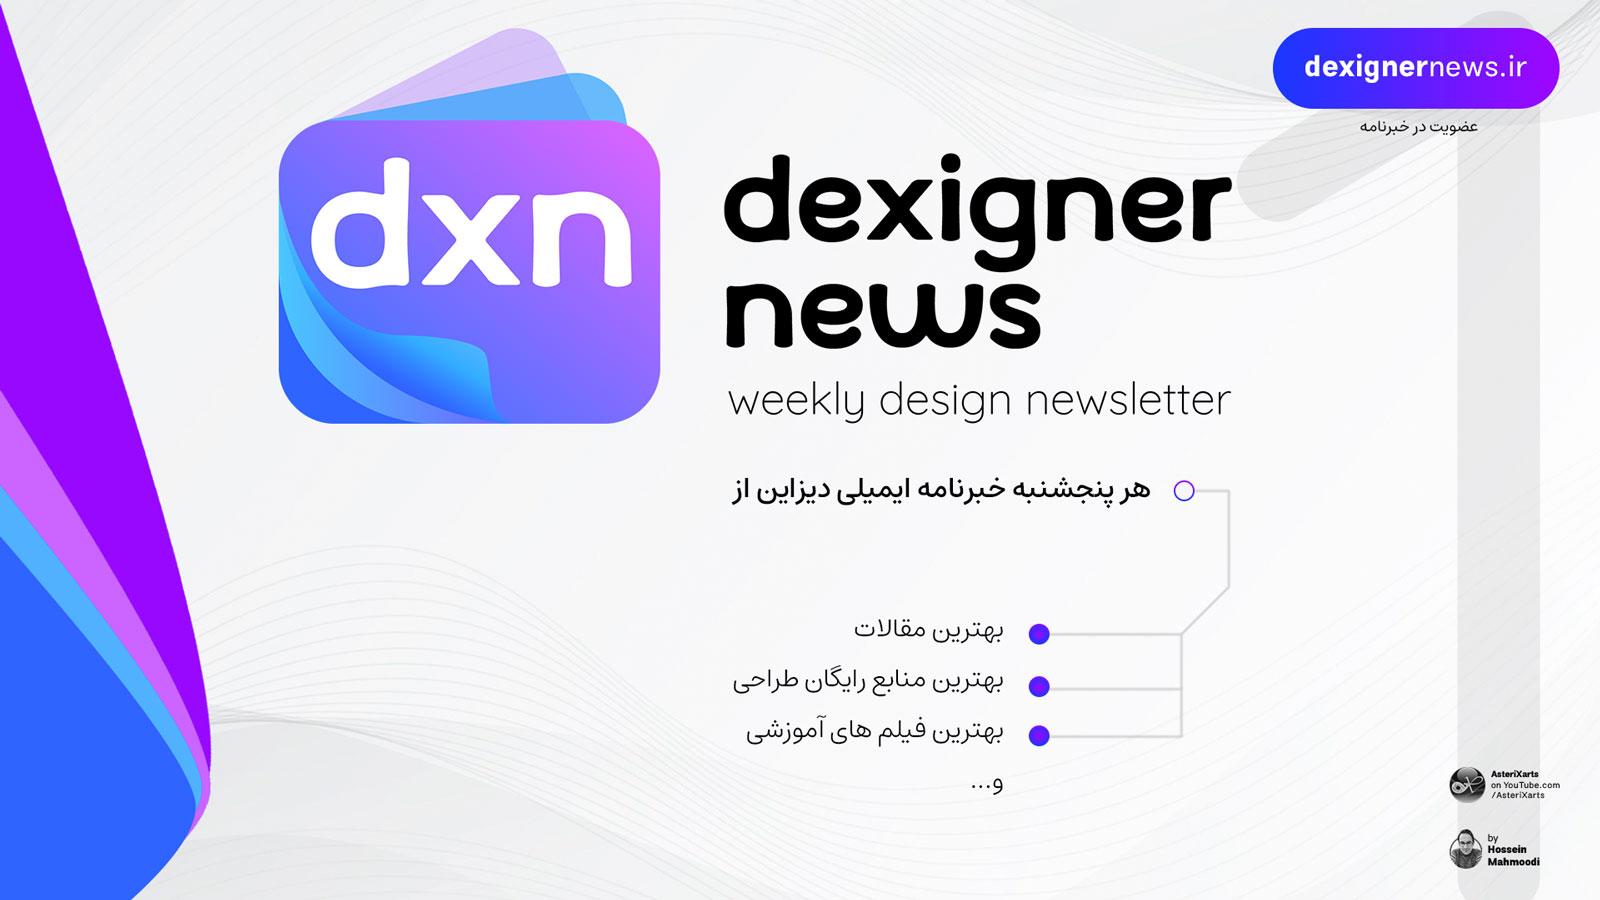 Dexigner News - خبرنامه هفتگی دیزاین - اولین هفته ماه - شماره 1